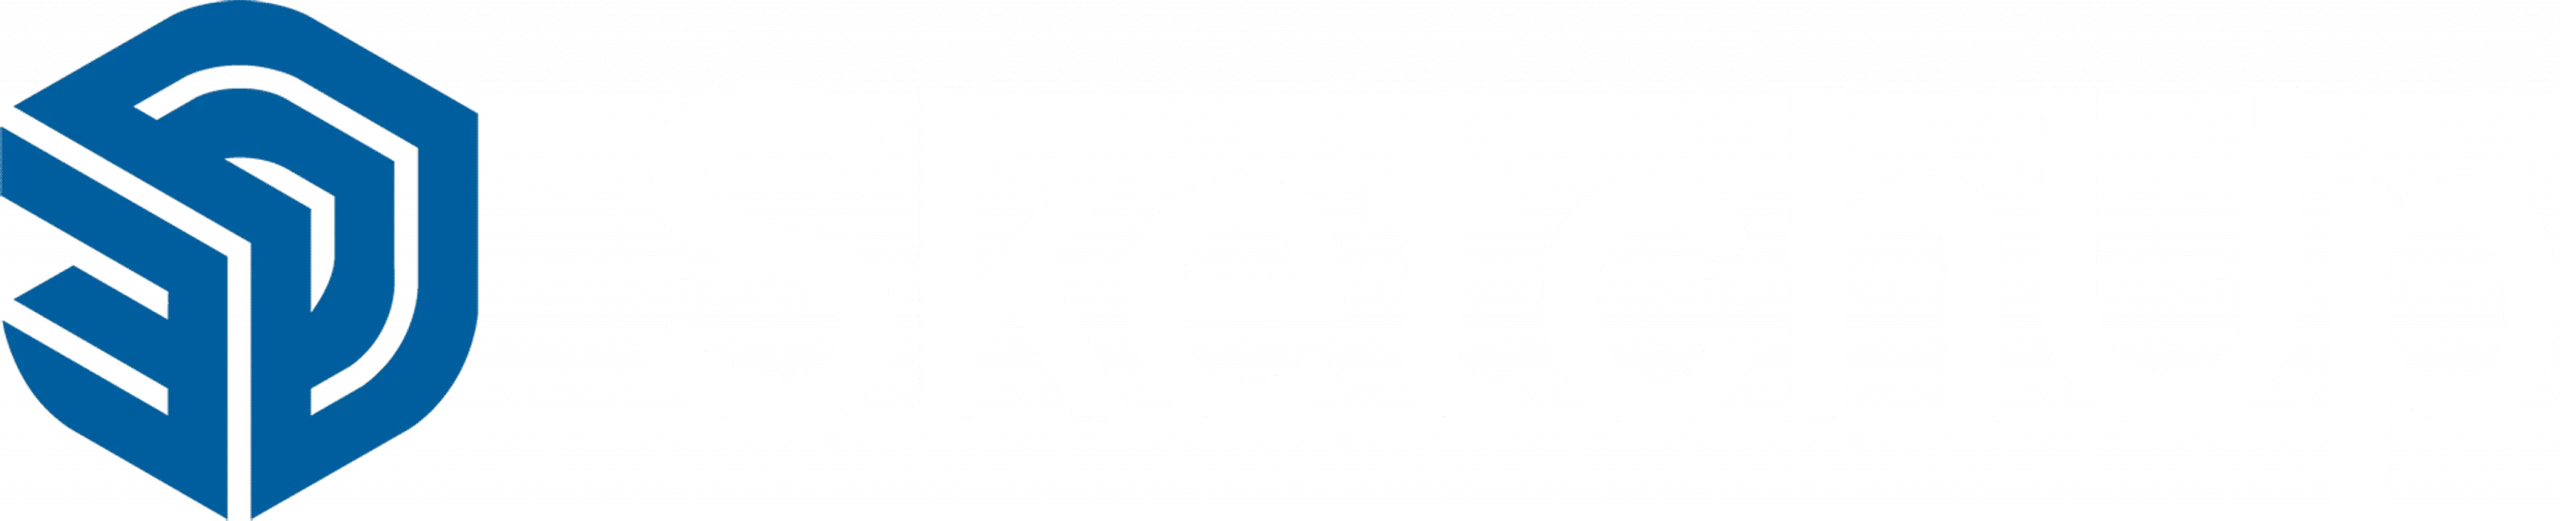 SketchUp-logo-OT-scaled-1.webp